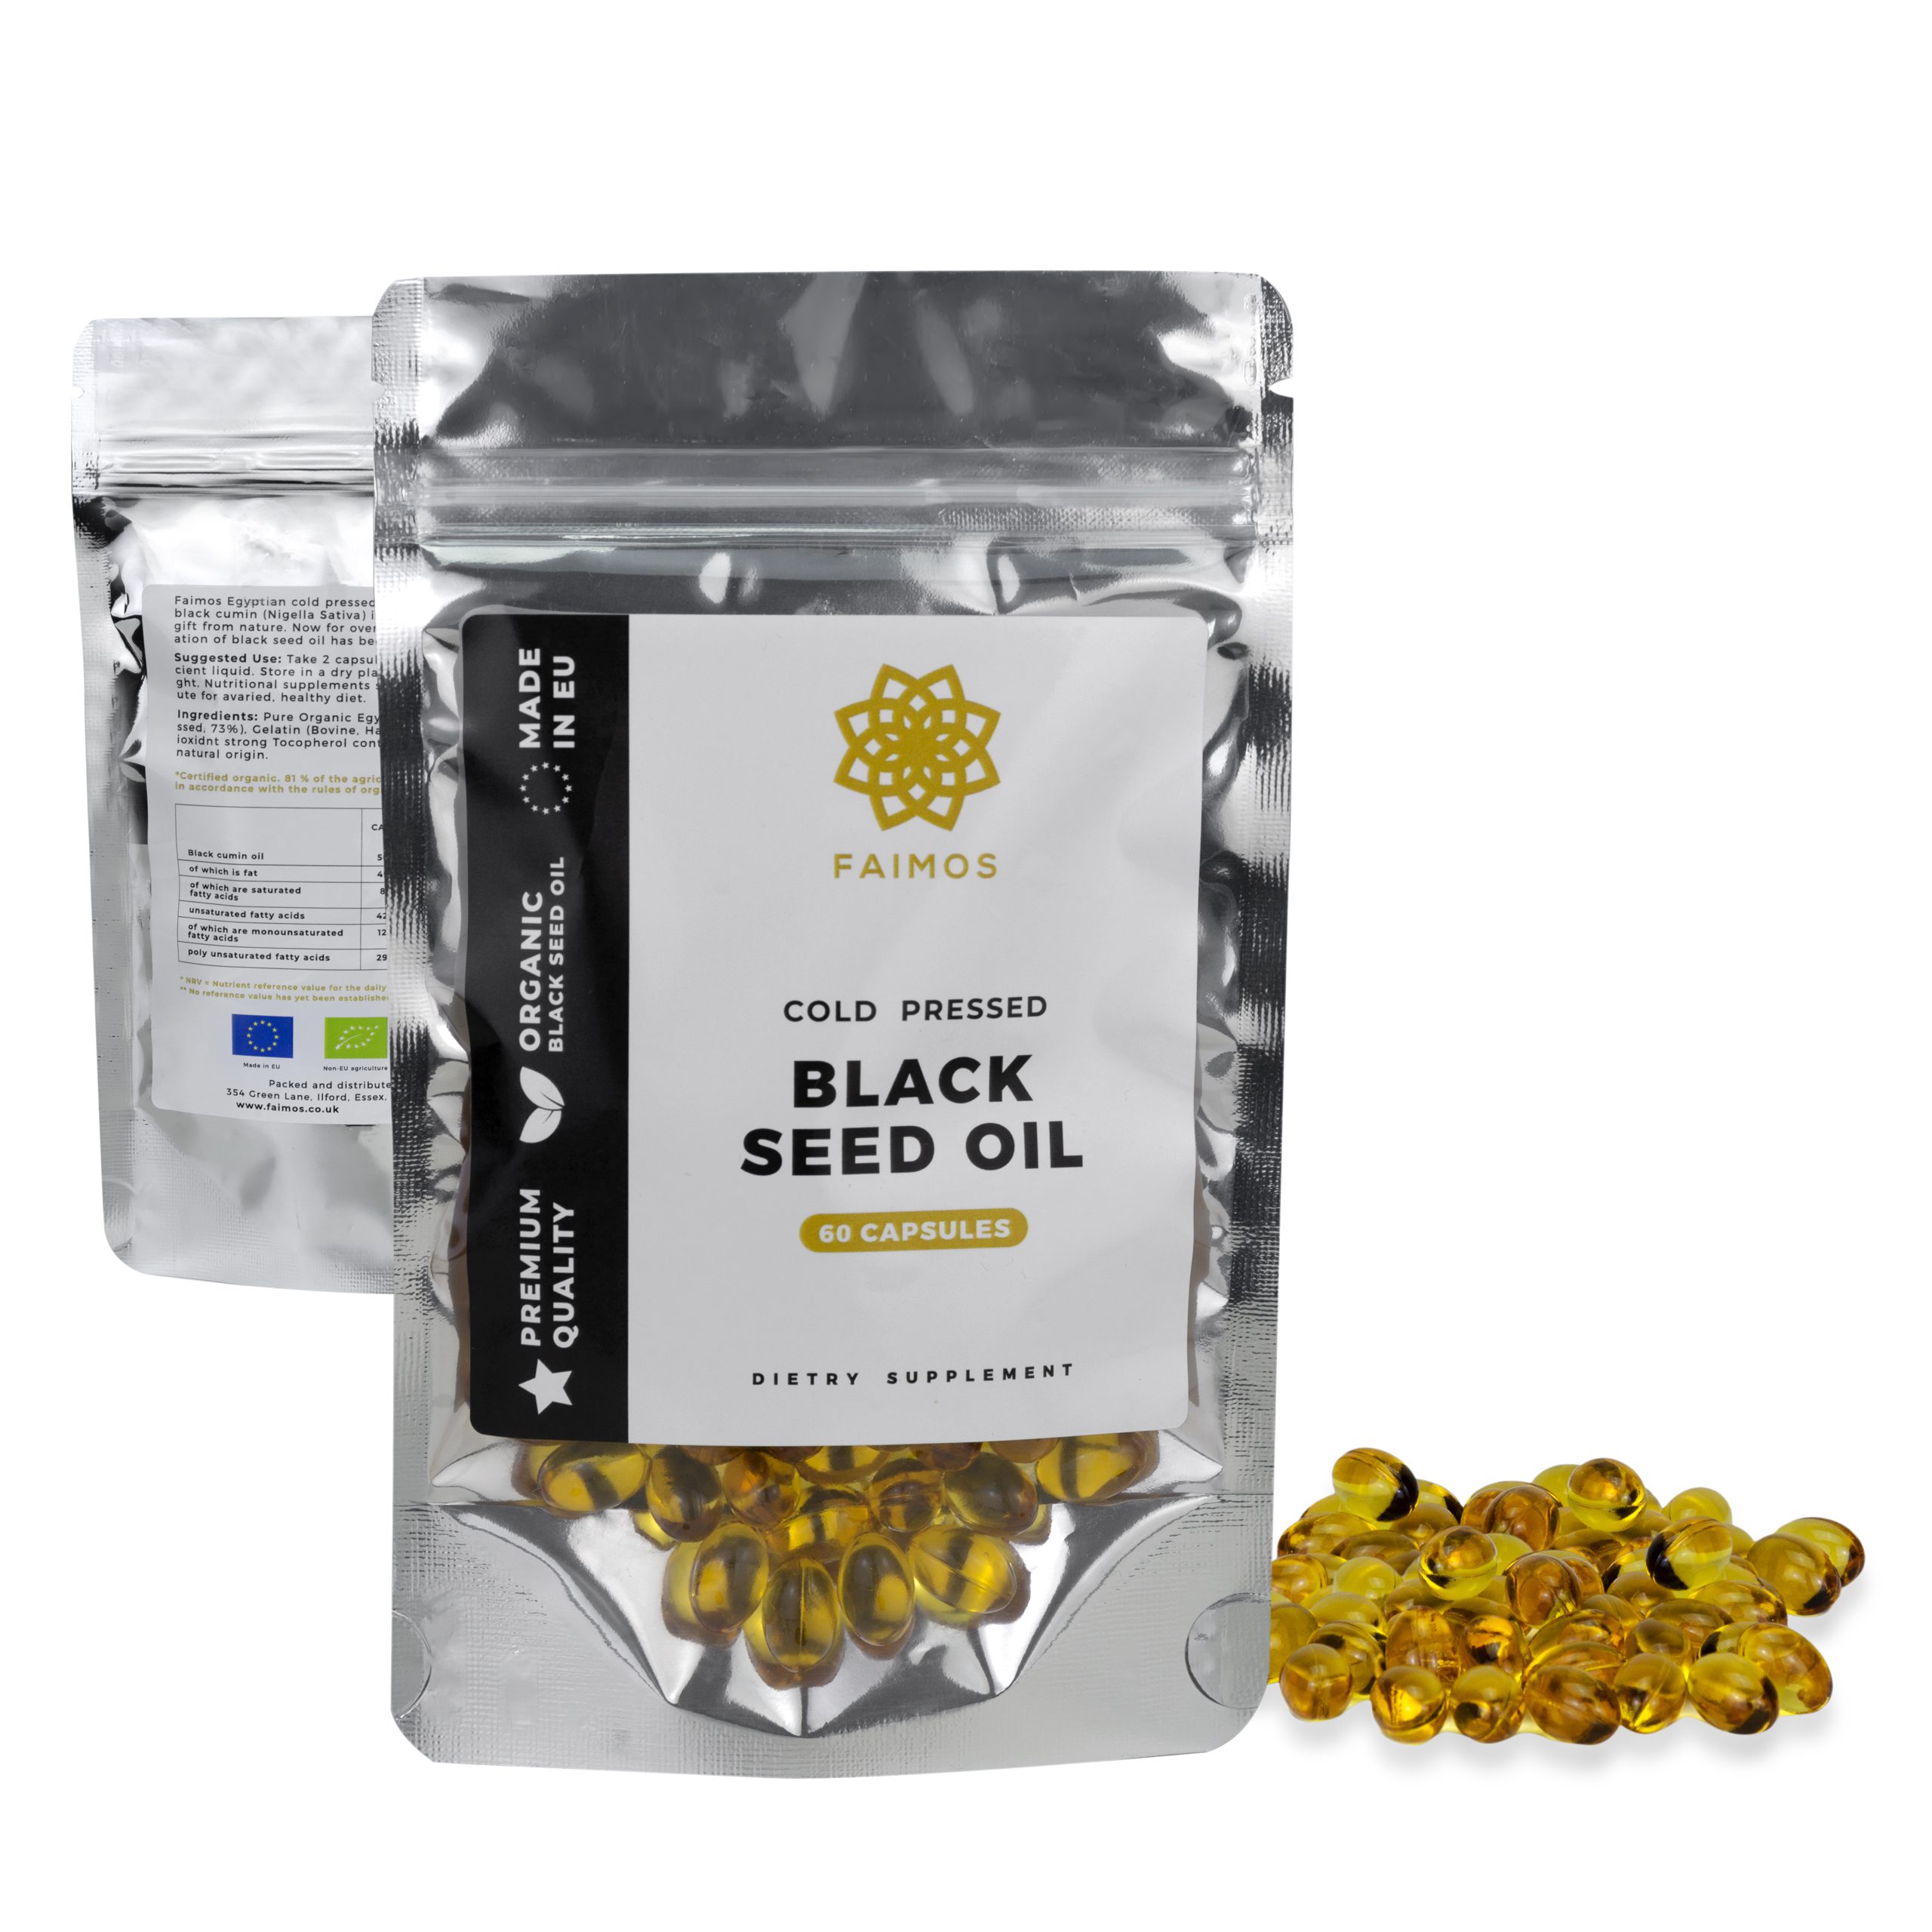 Faimos black seed oil capsule